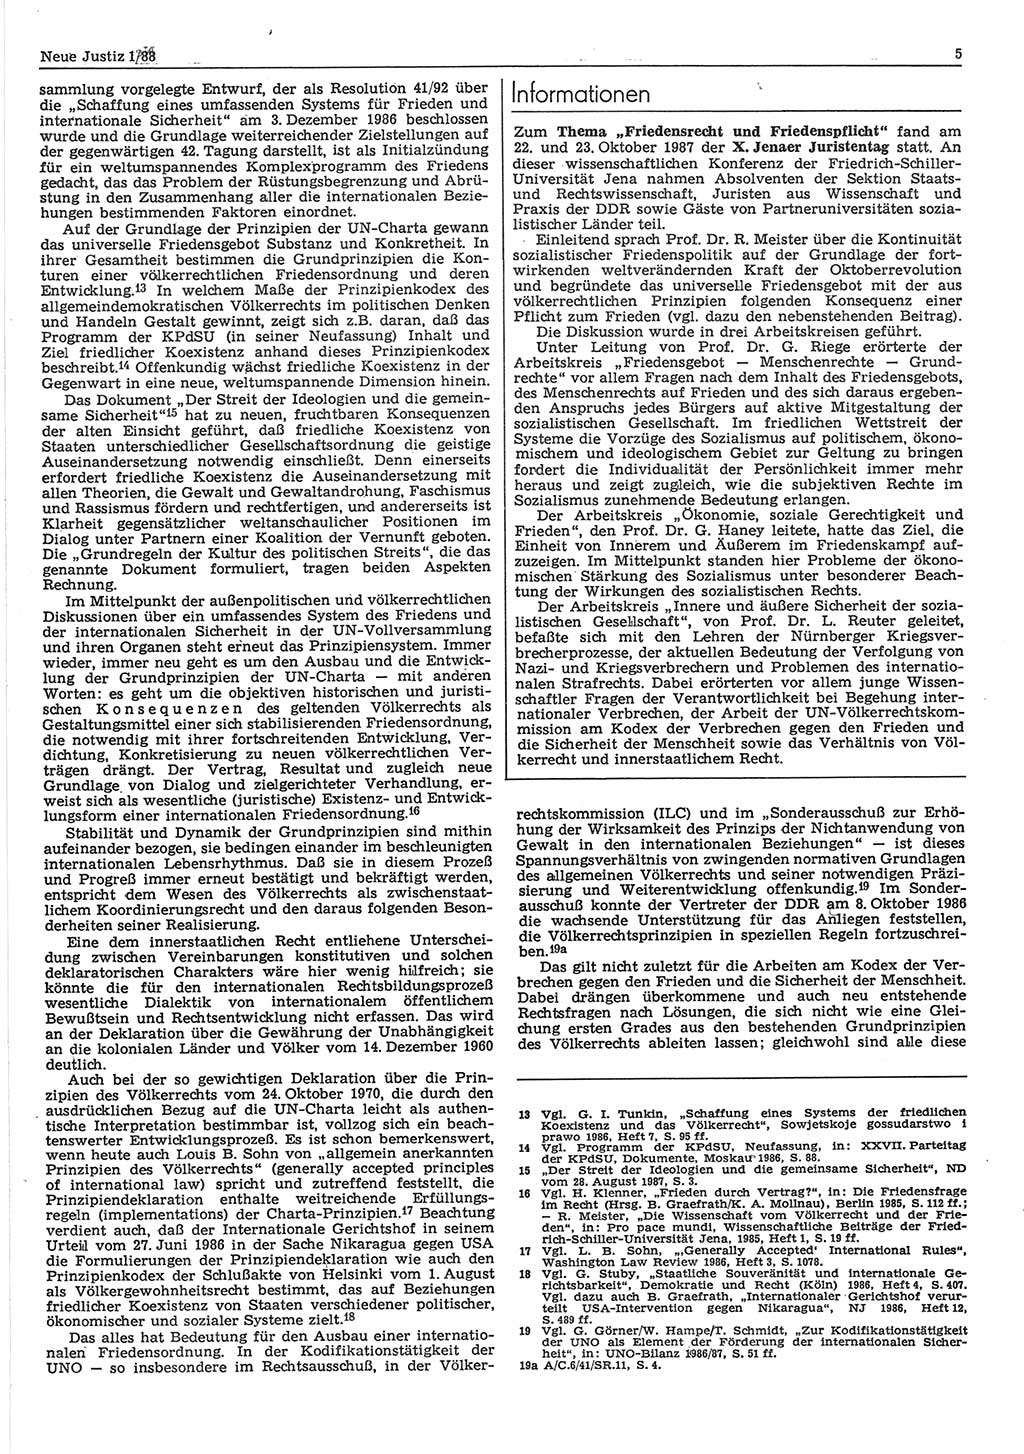 Neue Justiz (NJ), Zeitschrift für sozialistisches Recht und Gesetzlichkeit [Deutsche Demokratische Republik (DDR)], 42. Jahrgang 1988, Seite 5 (NJ DDR 1988, S. 5)